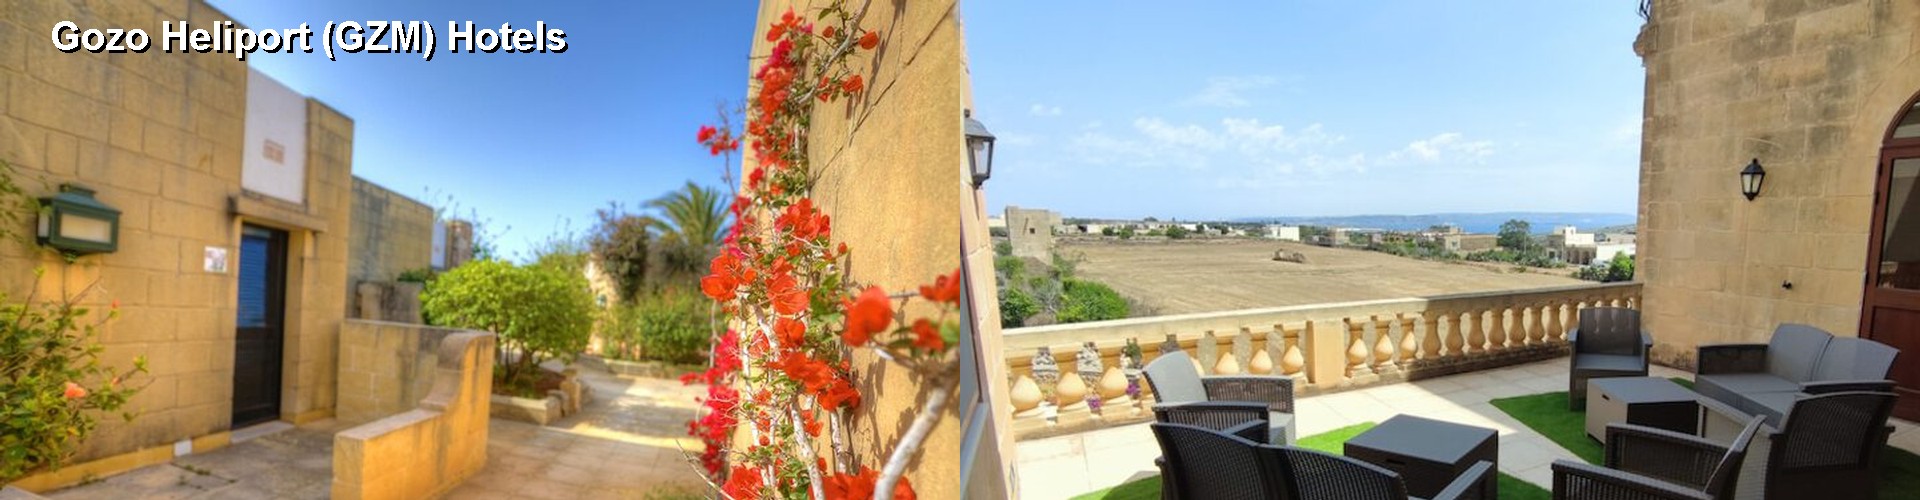 5 Best Hotels near Gozo Heliport (GZM)